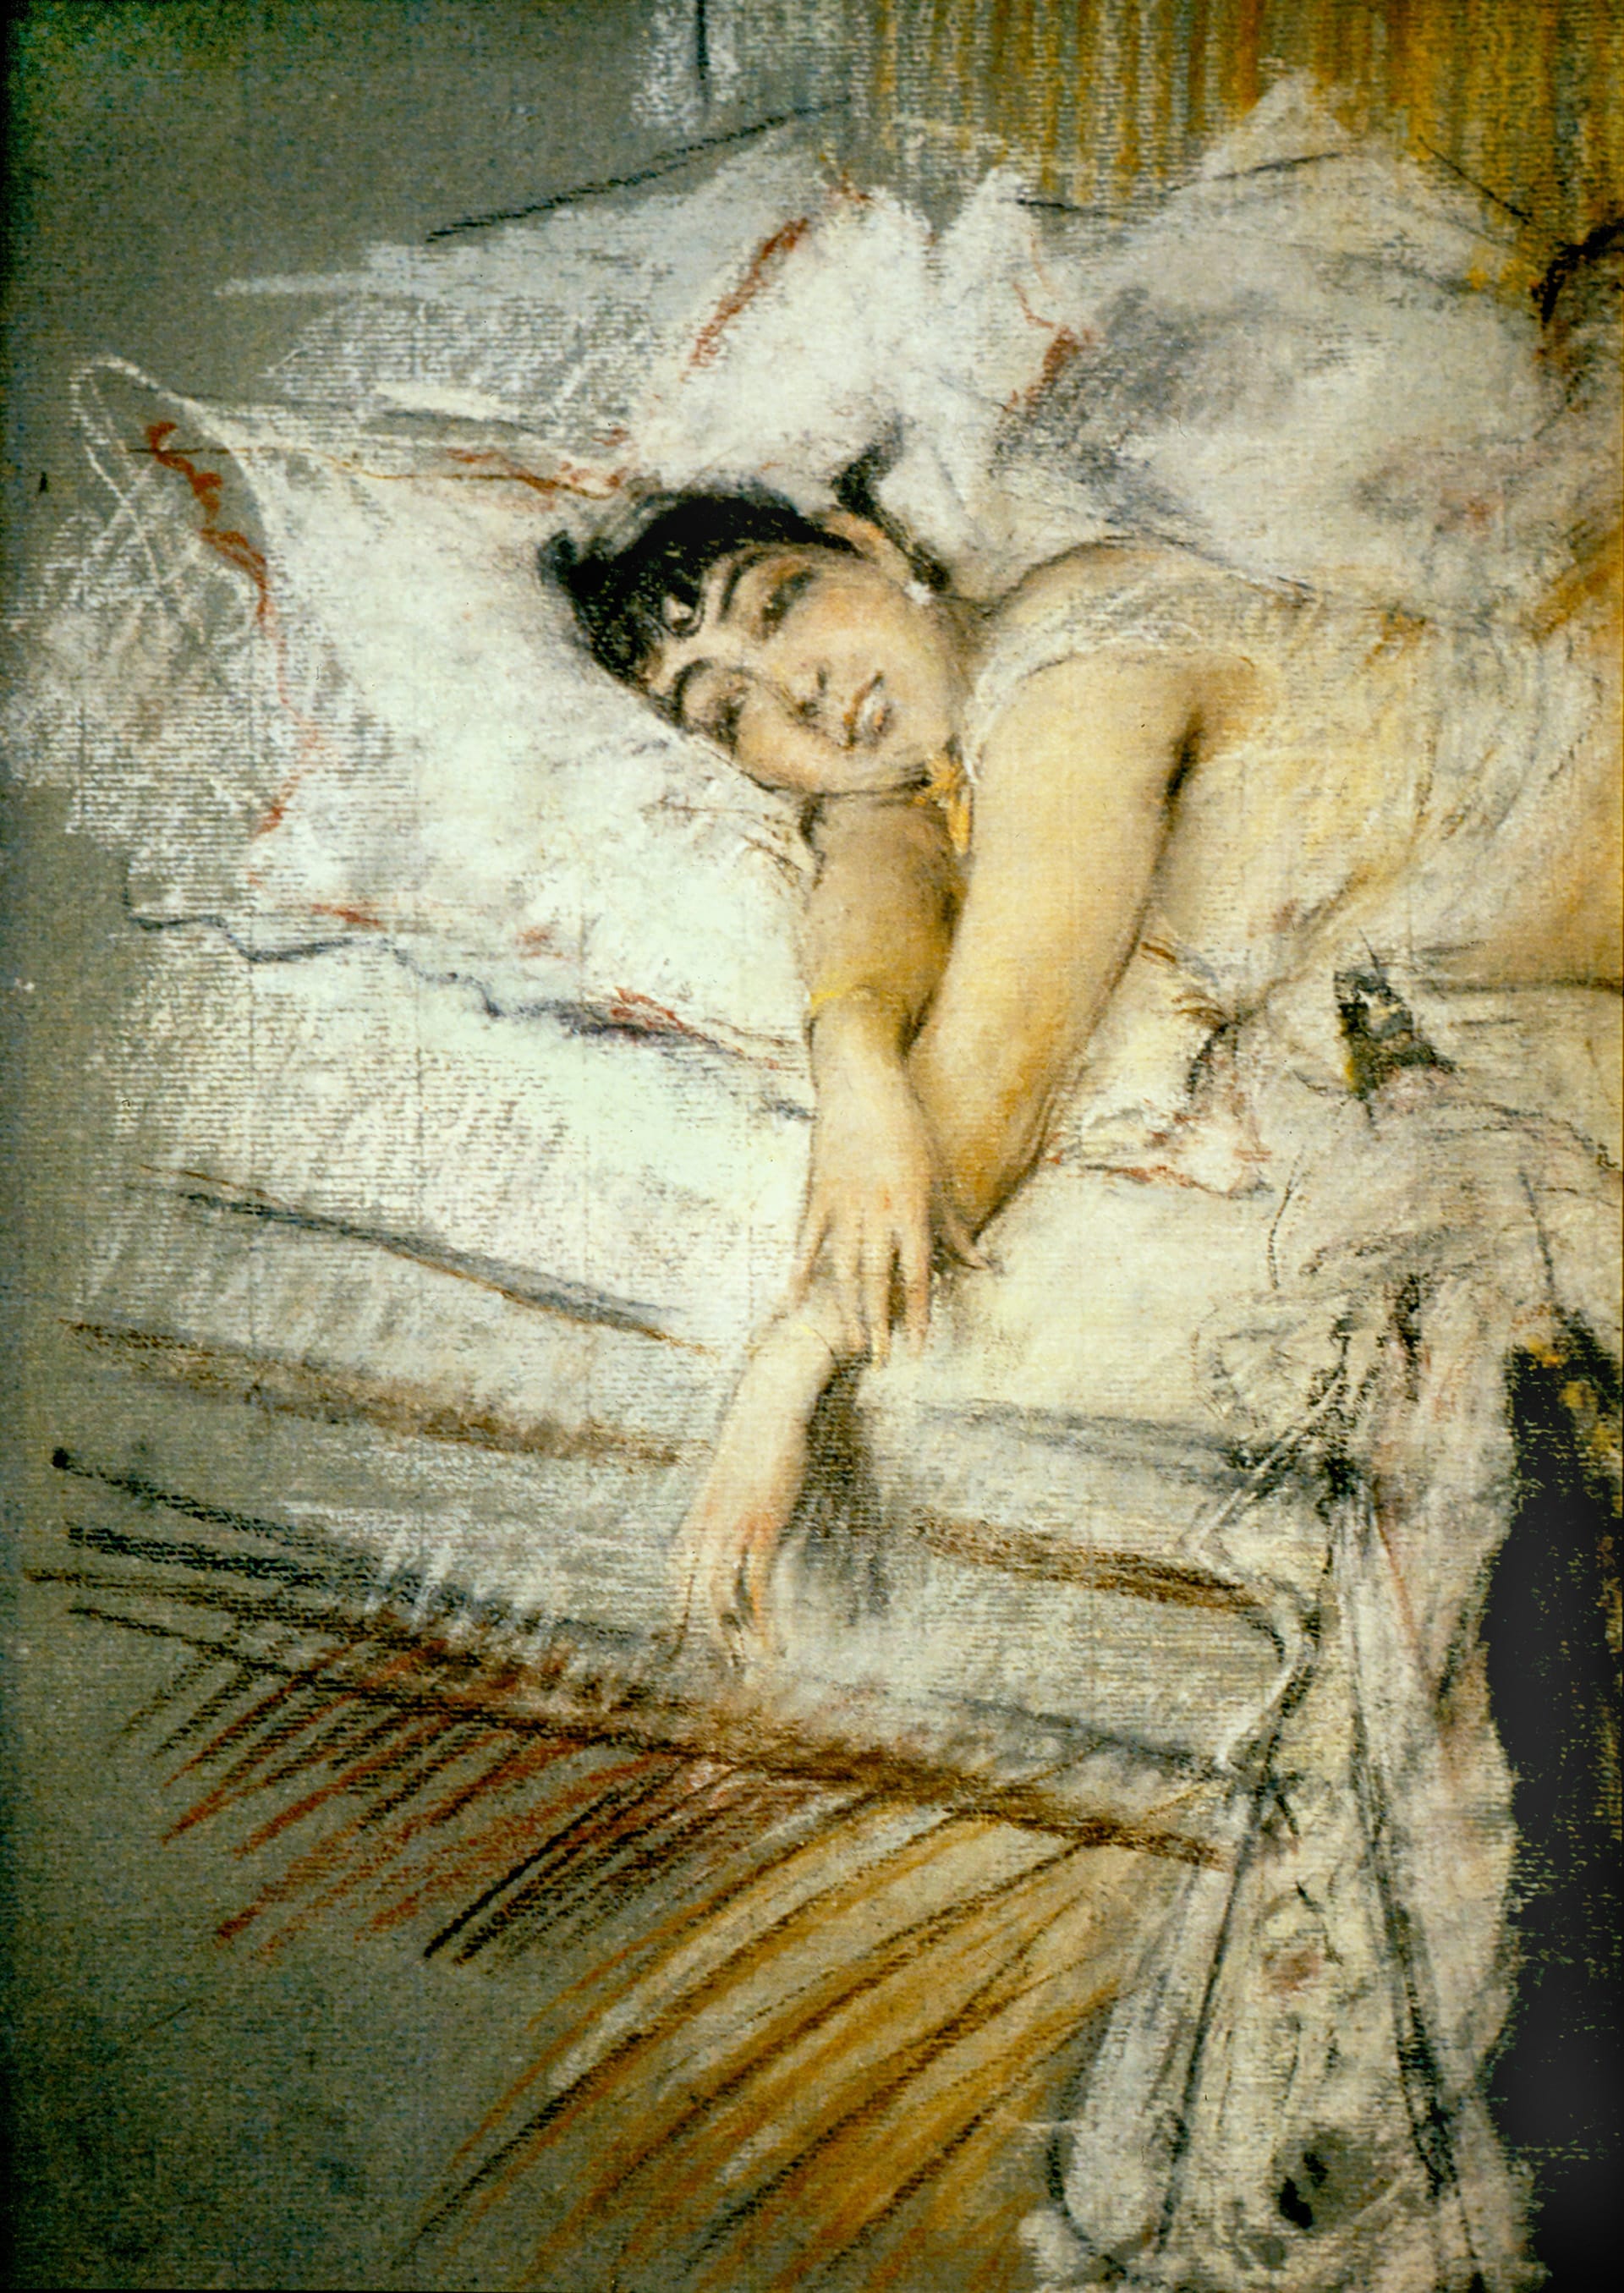 Giovanni Boldini "La contessa de Rasty a letto", 1880 ca. Pastelli su carta, 42,5 x 28 cm. Collezione privata. Courtesy Museo Archives Giovanni Boldini Macchiaioli